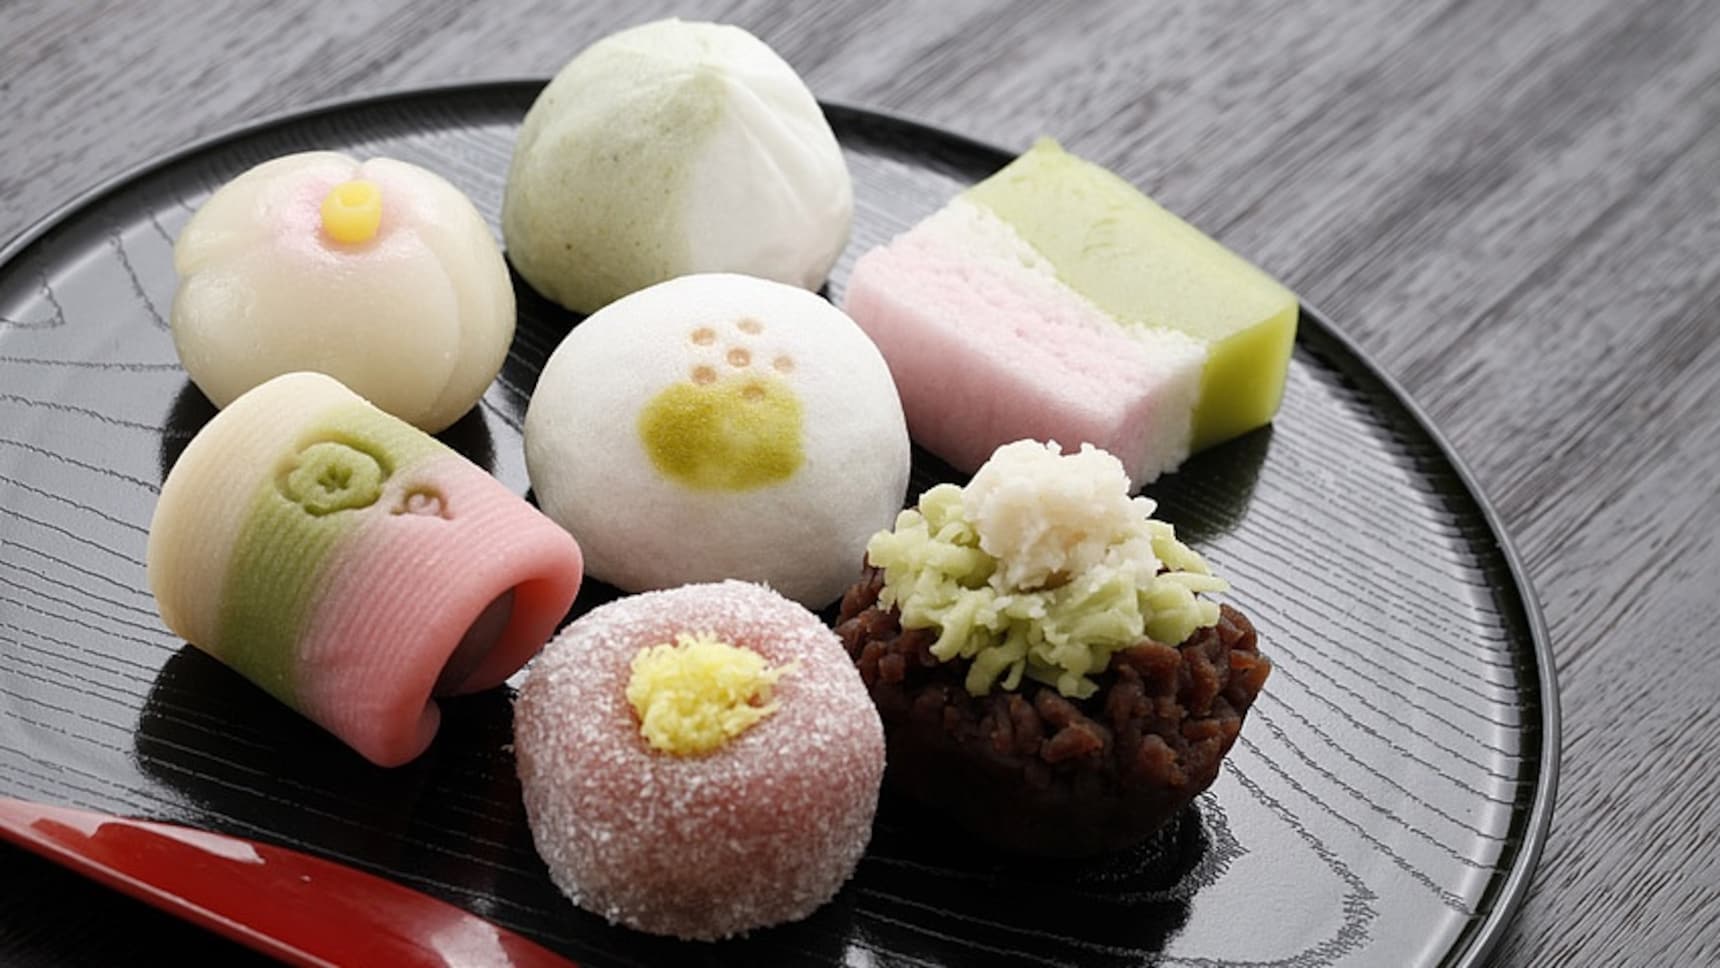 10 of Japan's Oldest Confection Shops